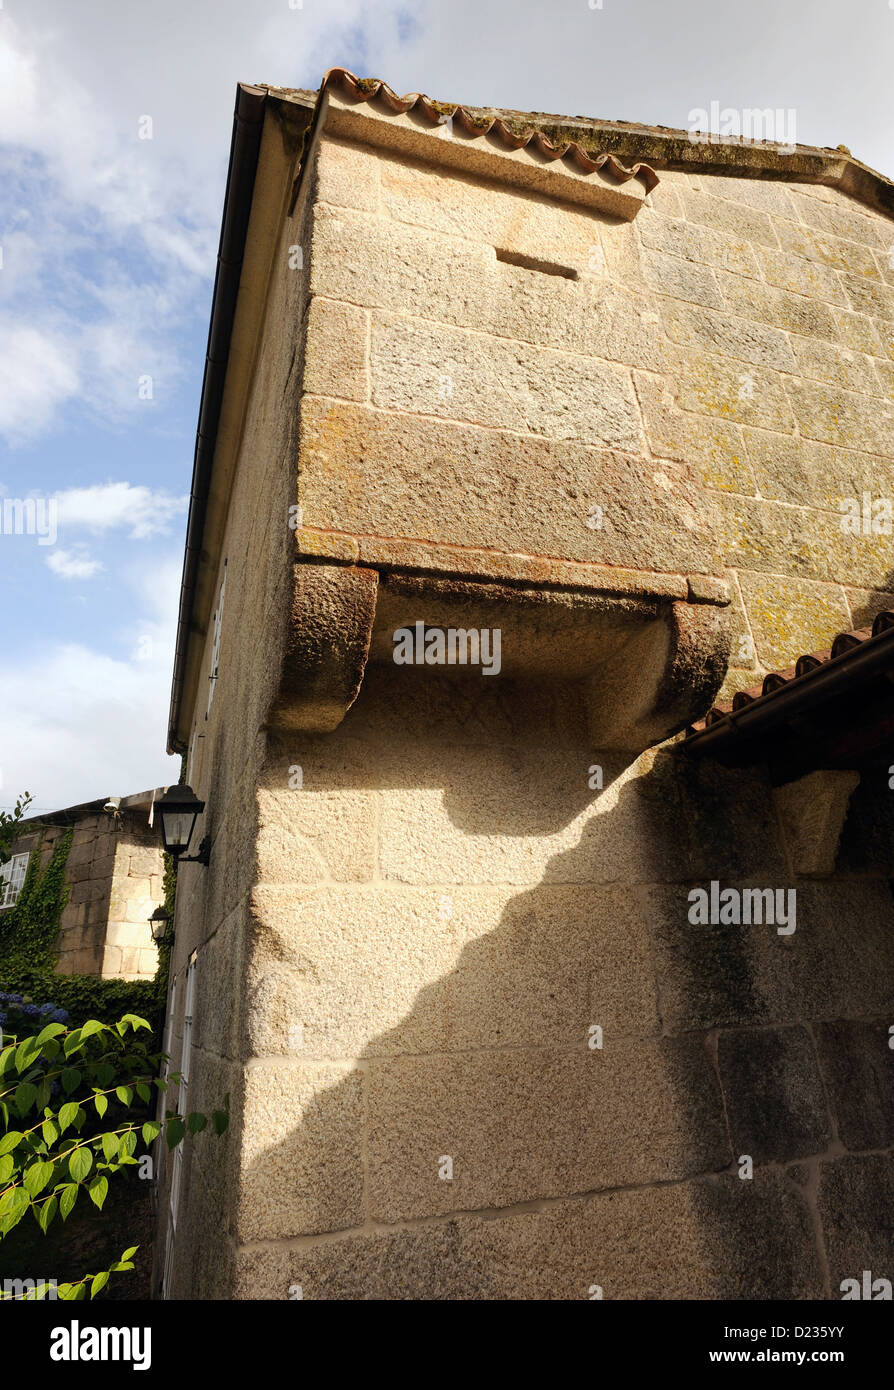 Instalaciones de inodoros en una casa señorial del siglo XVIII, con ménsulas guarderobe sobre el jardín. Coles, Ourense, Galicia, España Foto de stock